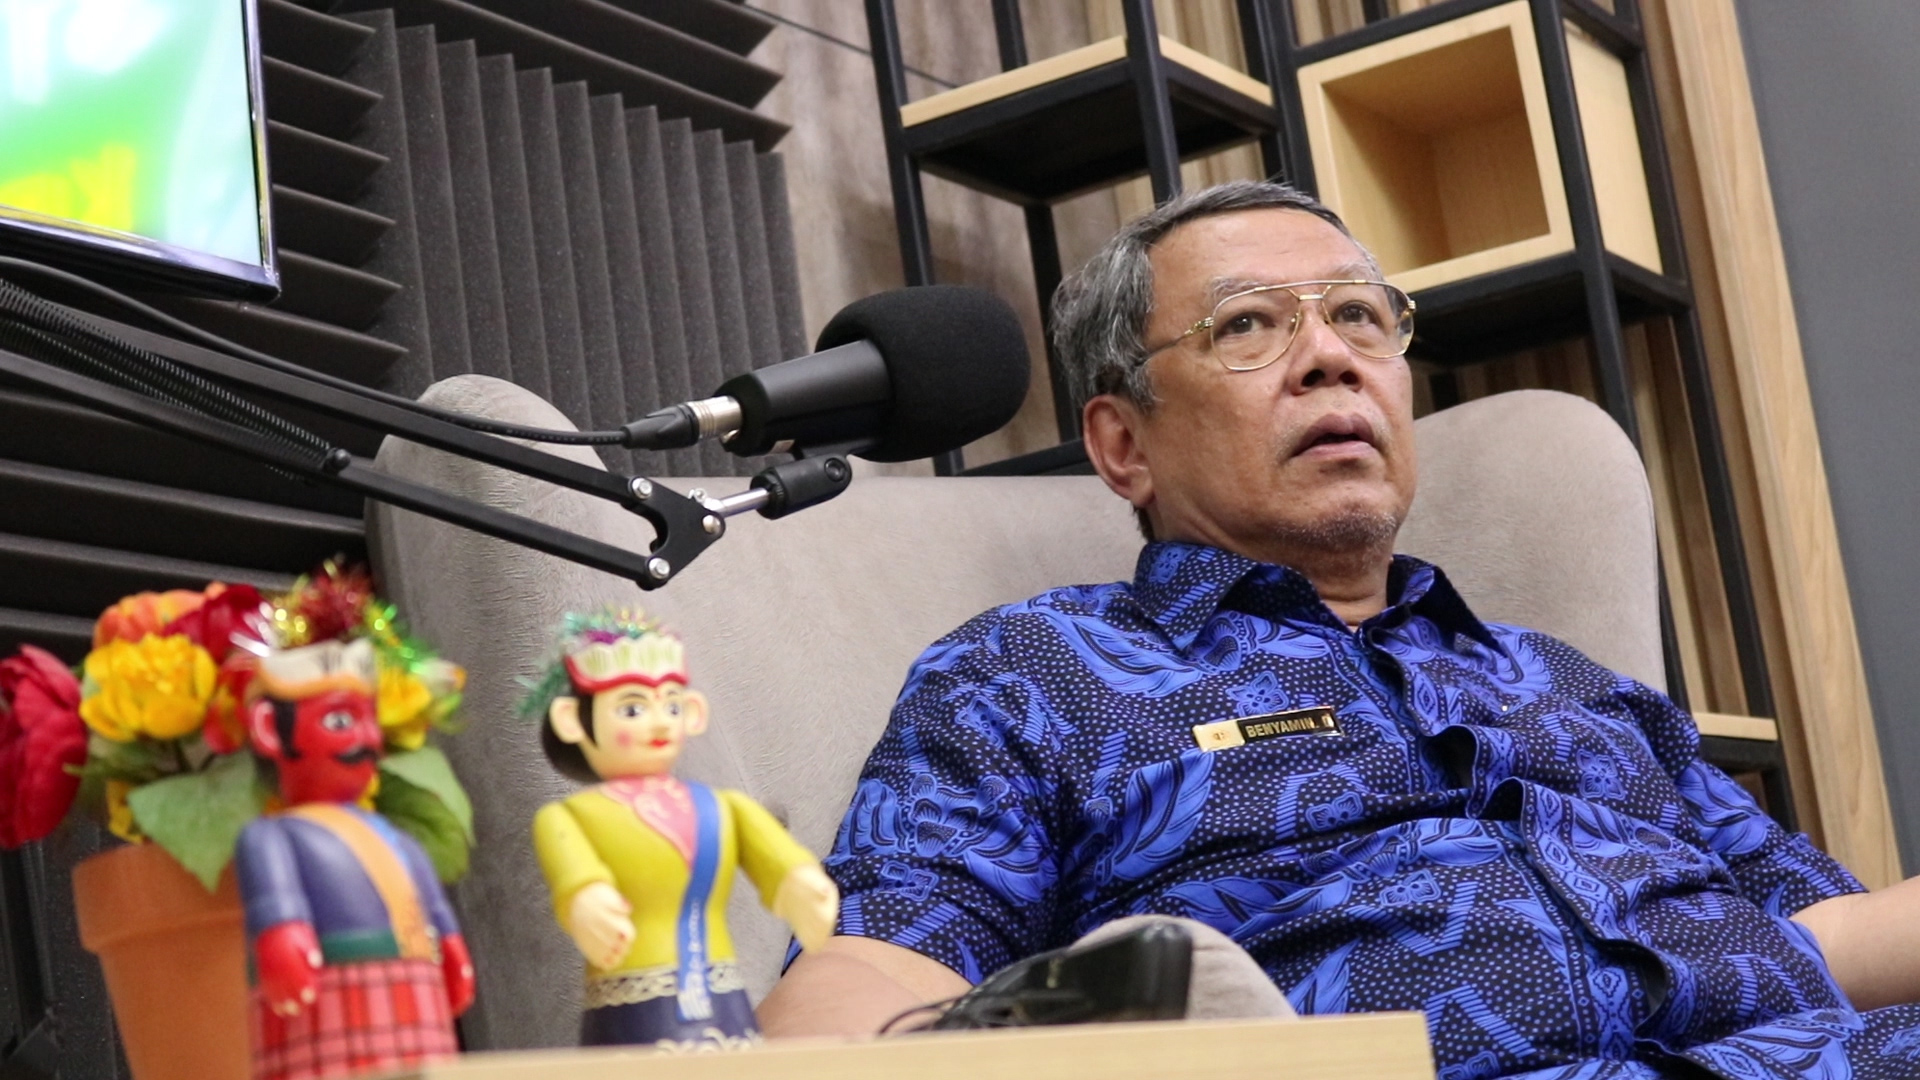 Wali Kota Tangerang Selatan Benyamin Davnie